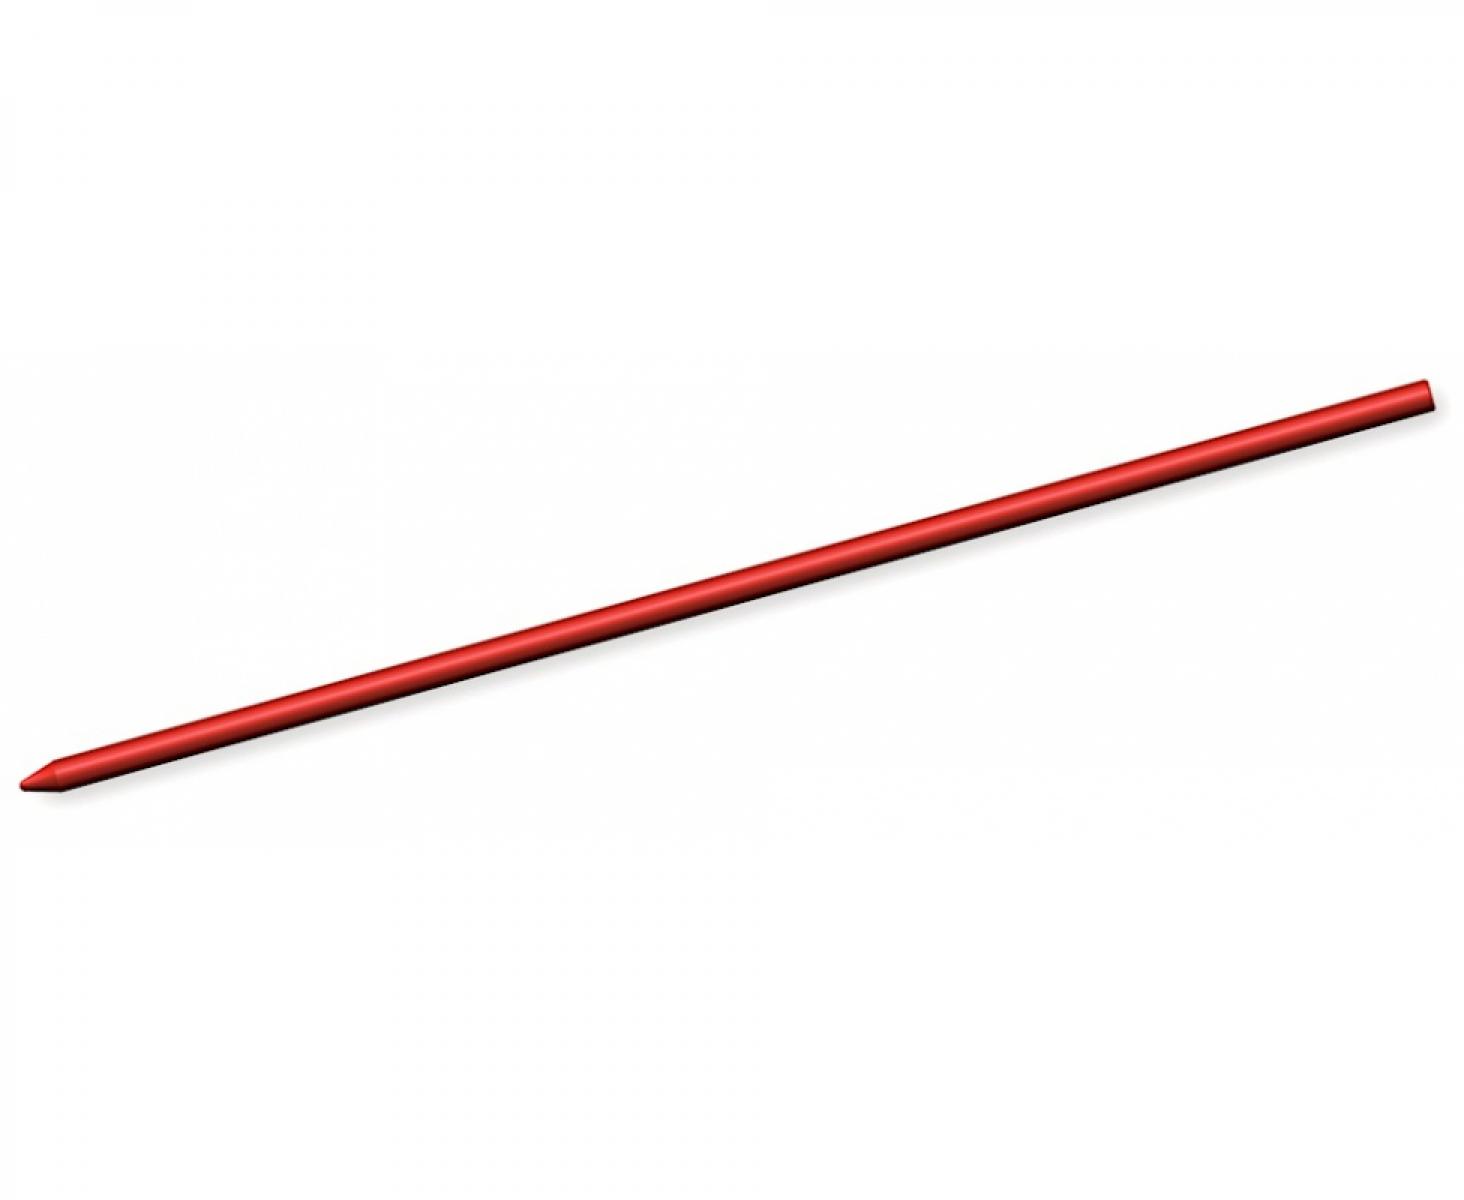 картинка Грифели для карандаша Pica-Dry красные Pica 4031 10 пр. от магазина "Элит-инструмент"